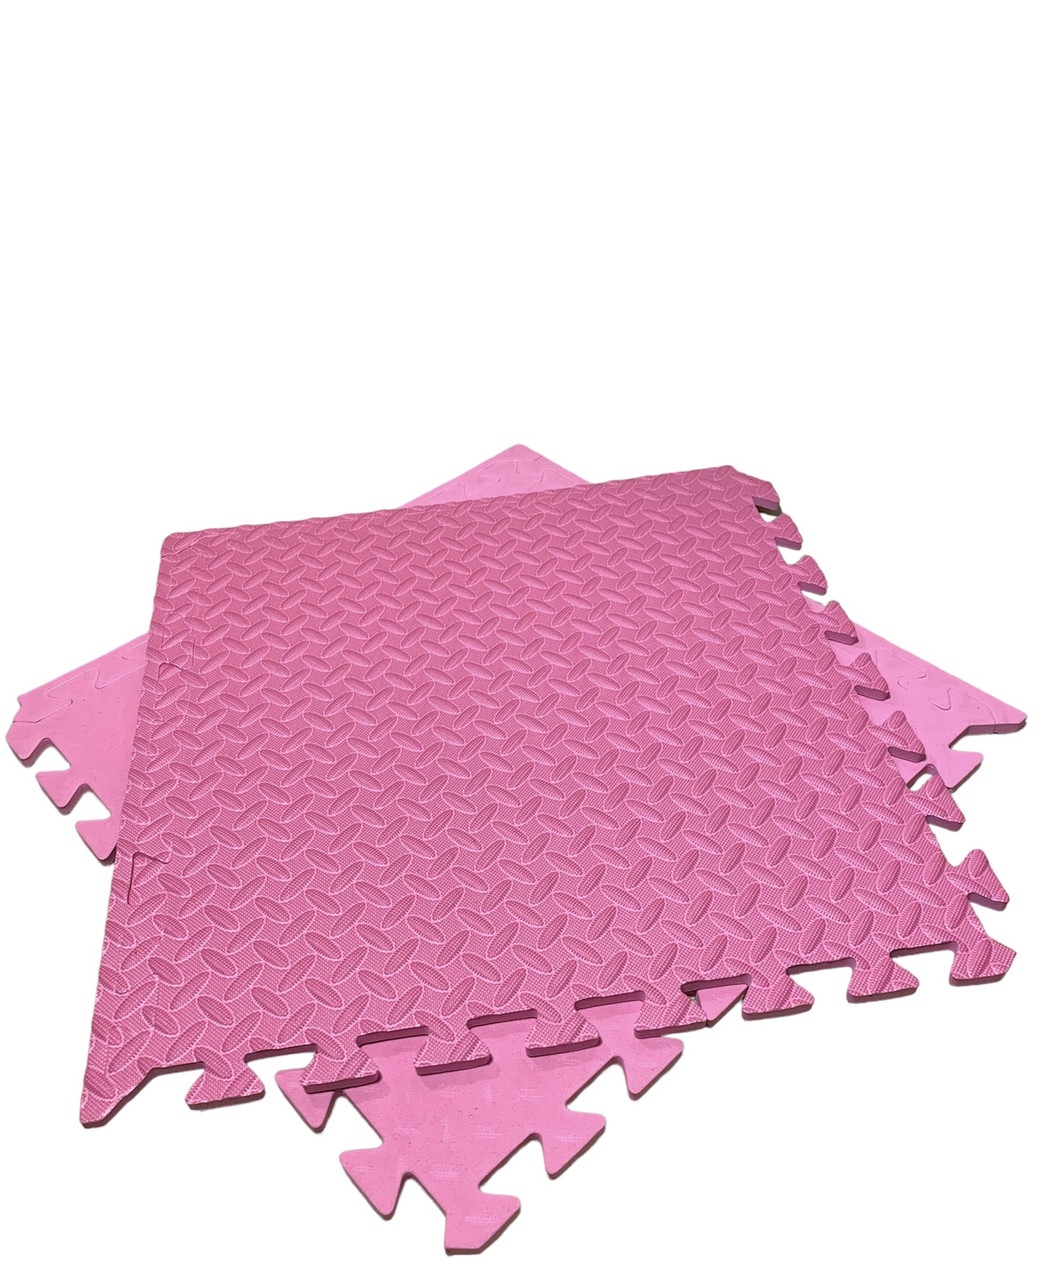 Покриття для дитячої кімнати 50 х 50 х 1 см, мат татамі ластівчин хвіст EVA,   мати для дітей, колір рожевий